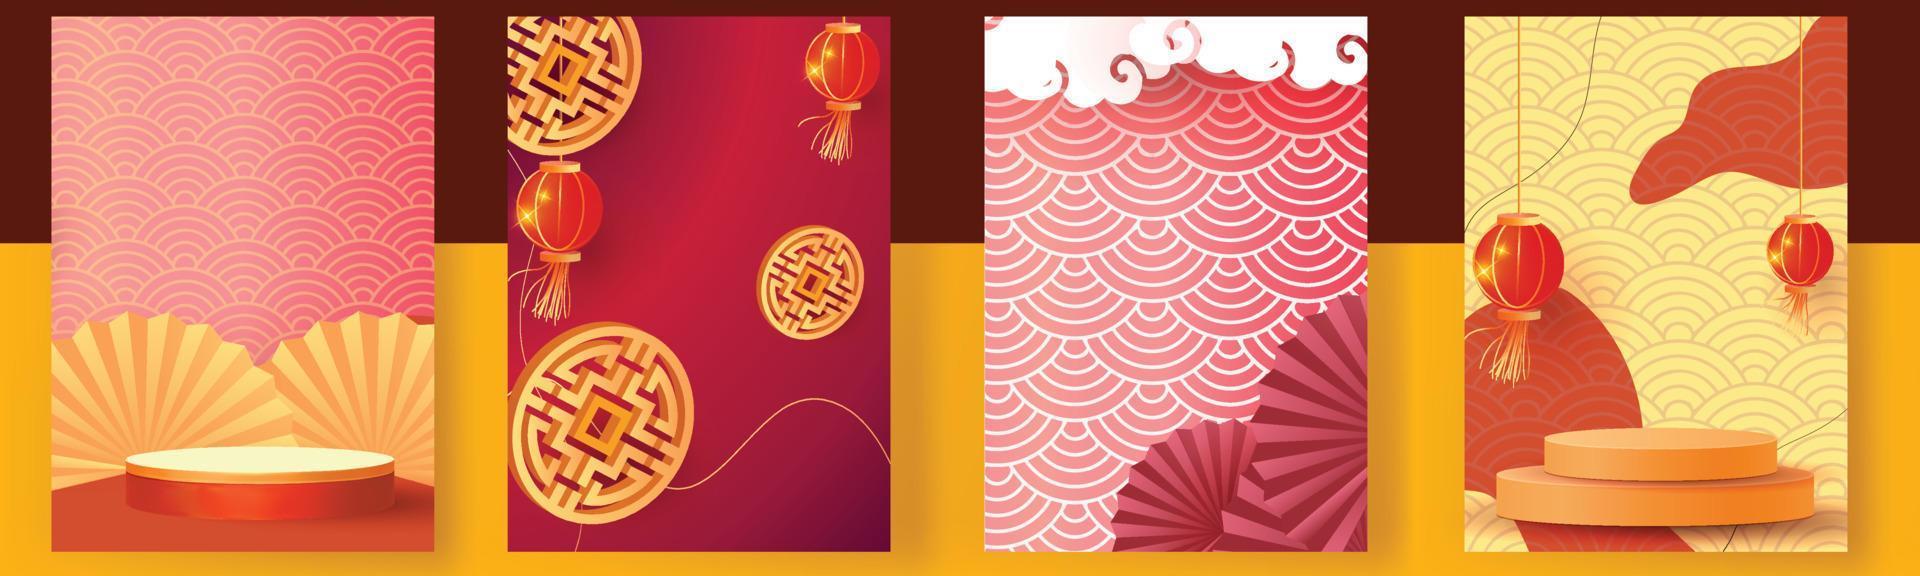 chinees nieuwjaar set achtergronden goud rood vector podium ontwerp grafisch patroon modern sjabloon kaart